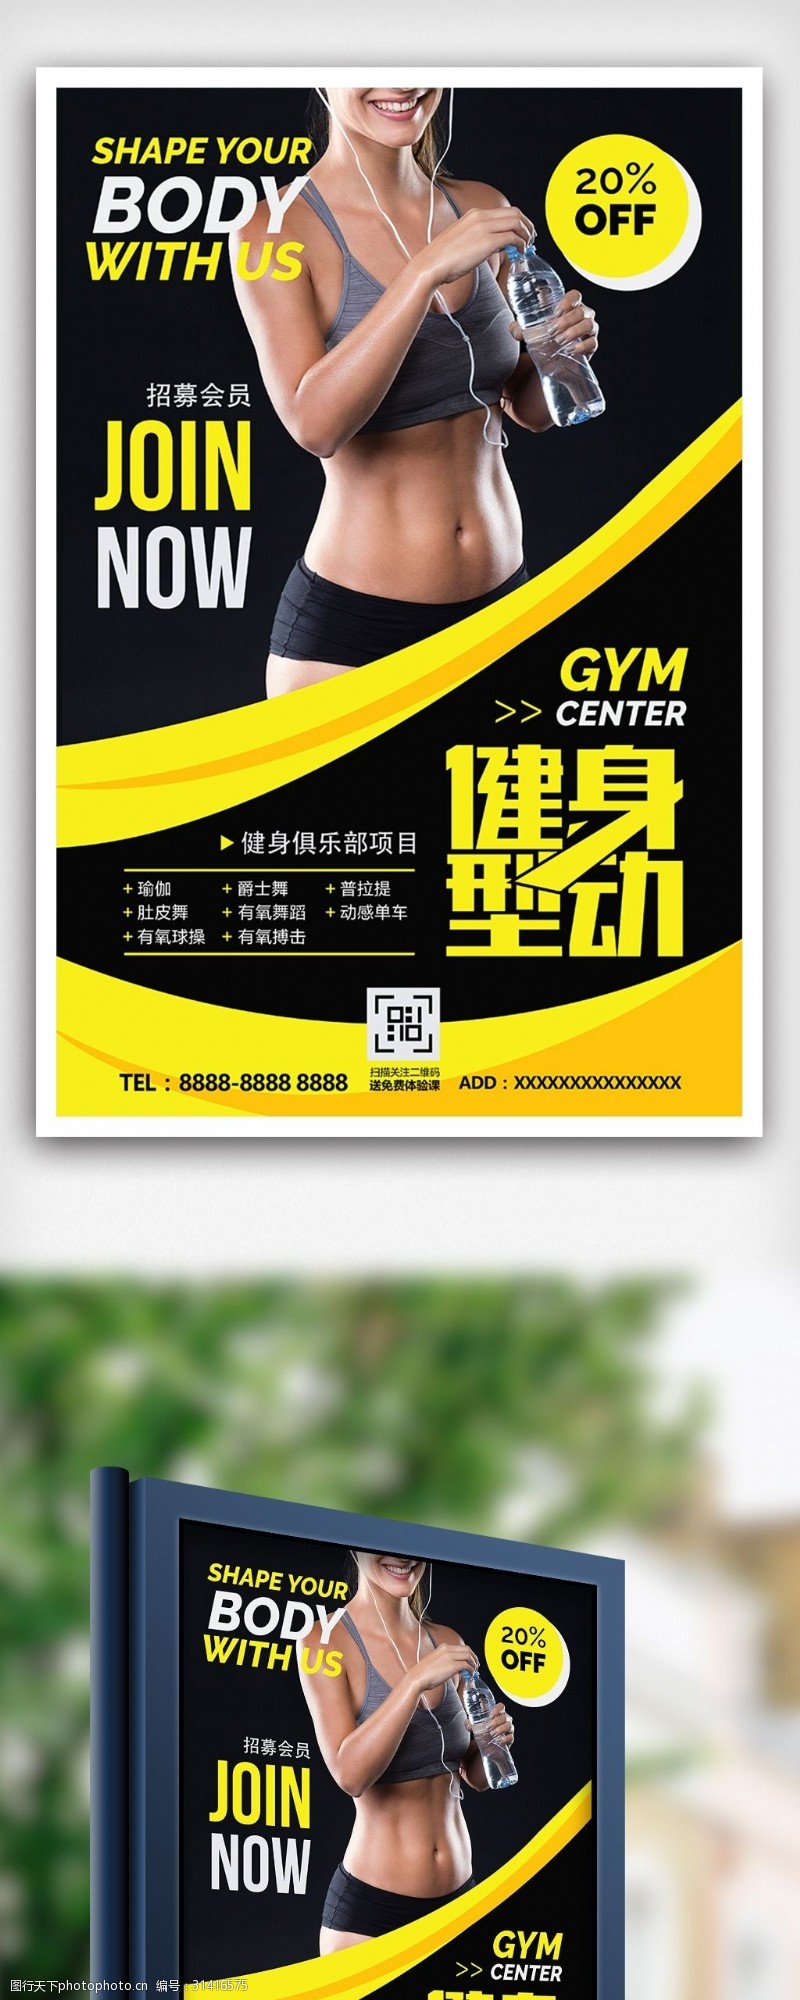 健身卡免费下载健身俱乐部招募会员海报设计